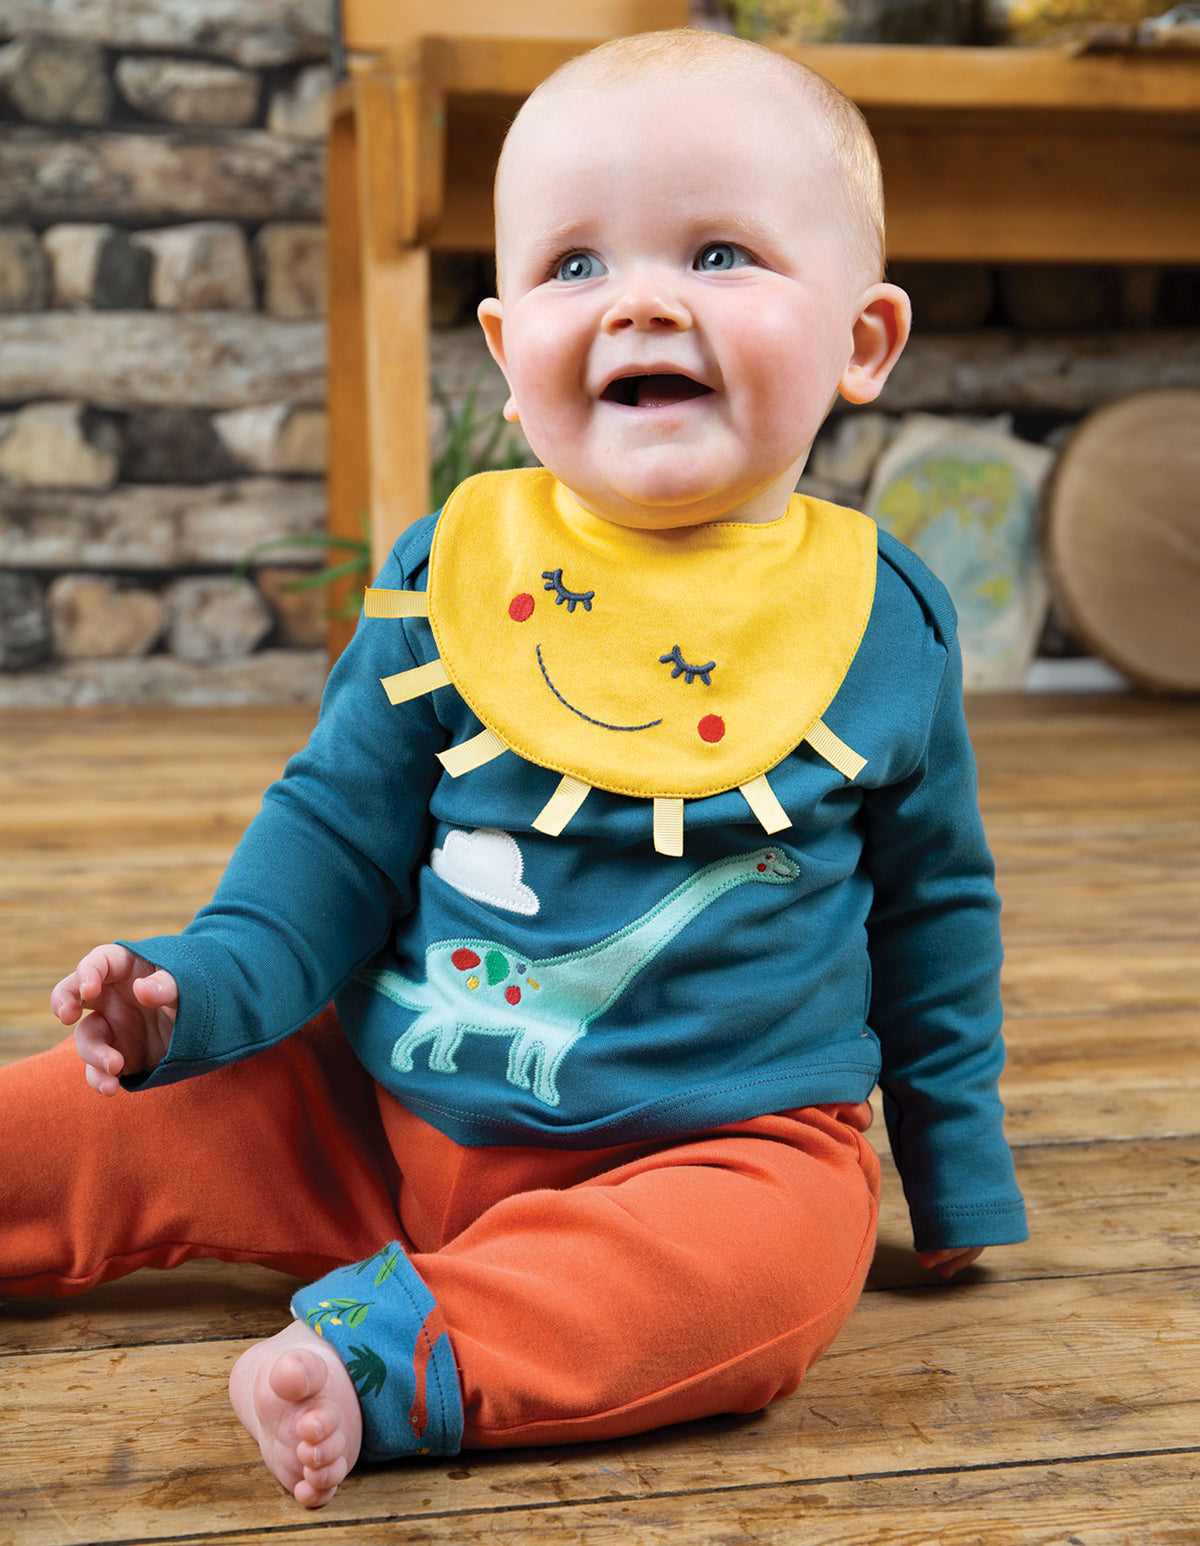 Baby mit Shirt mit Dinosaurier applikation von der Marke Frugi